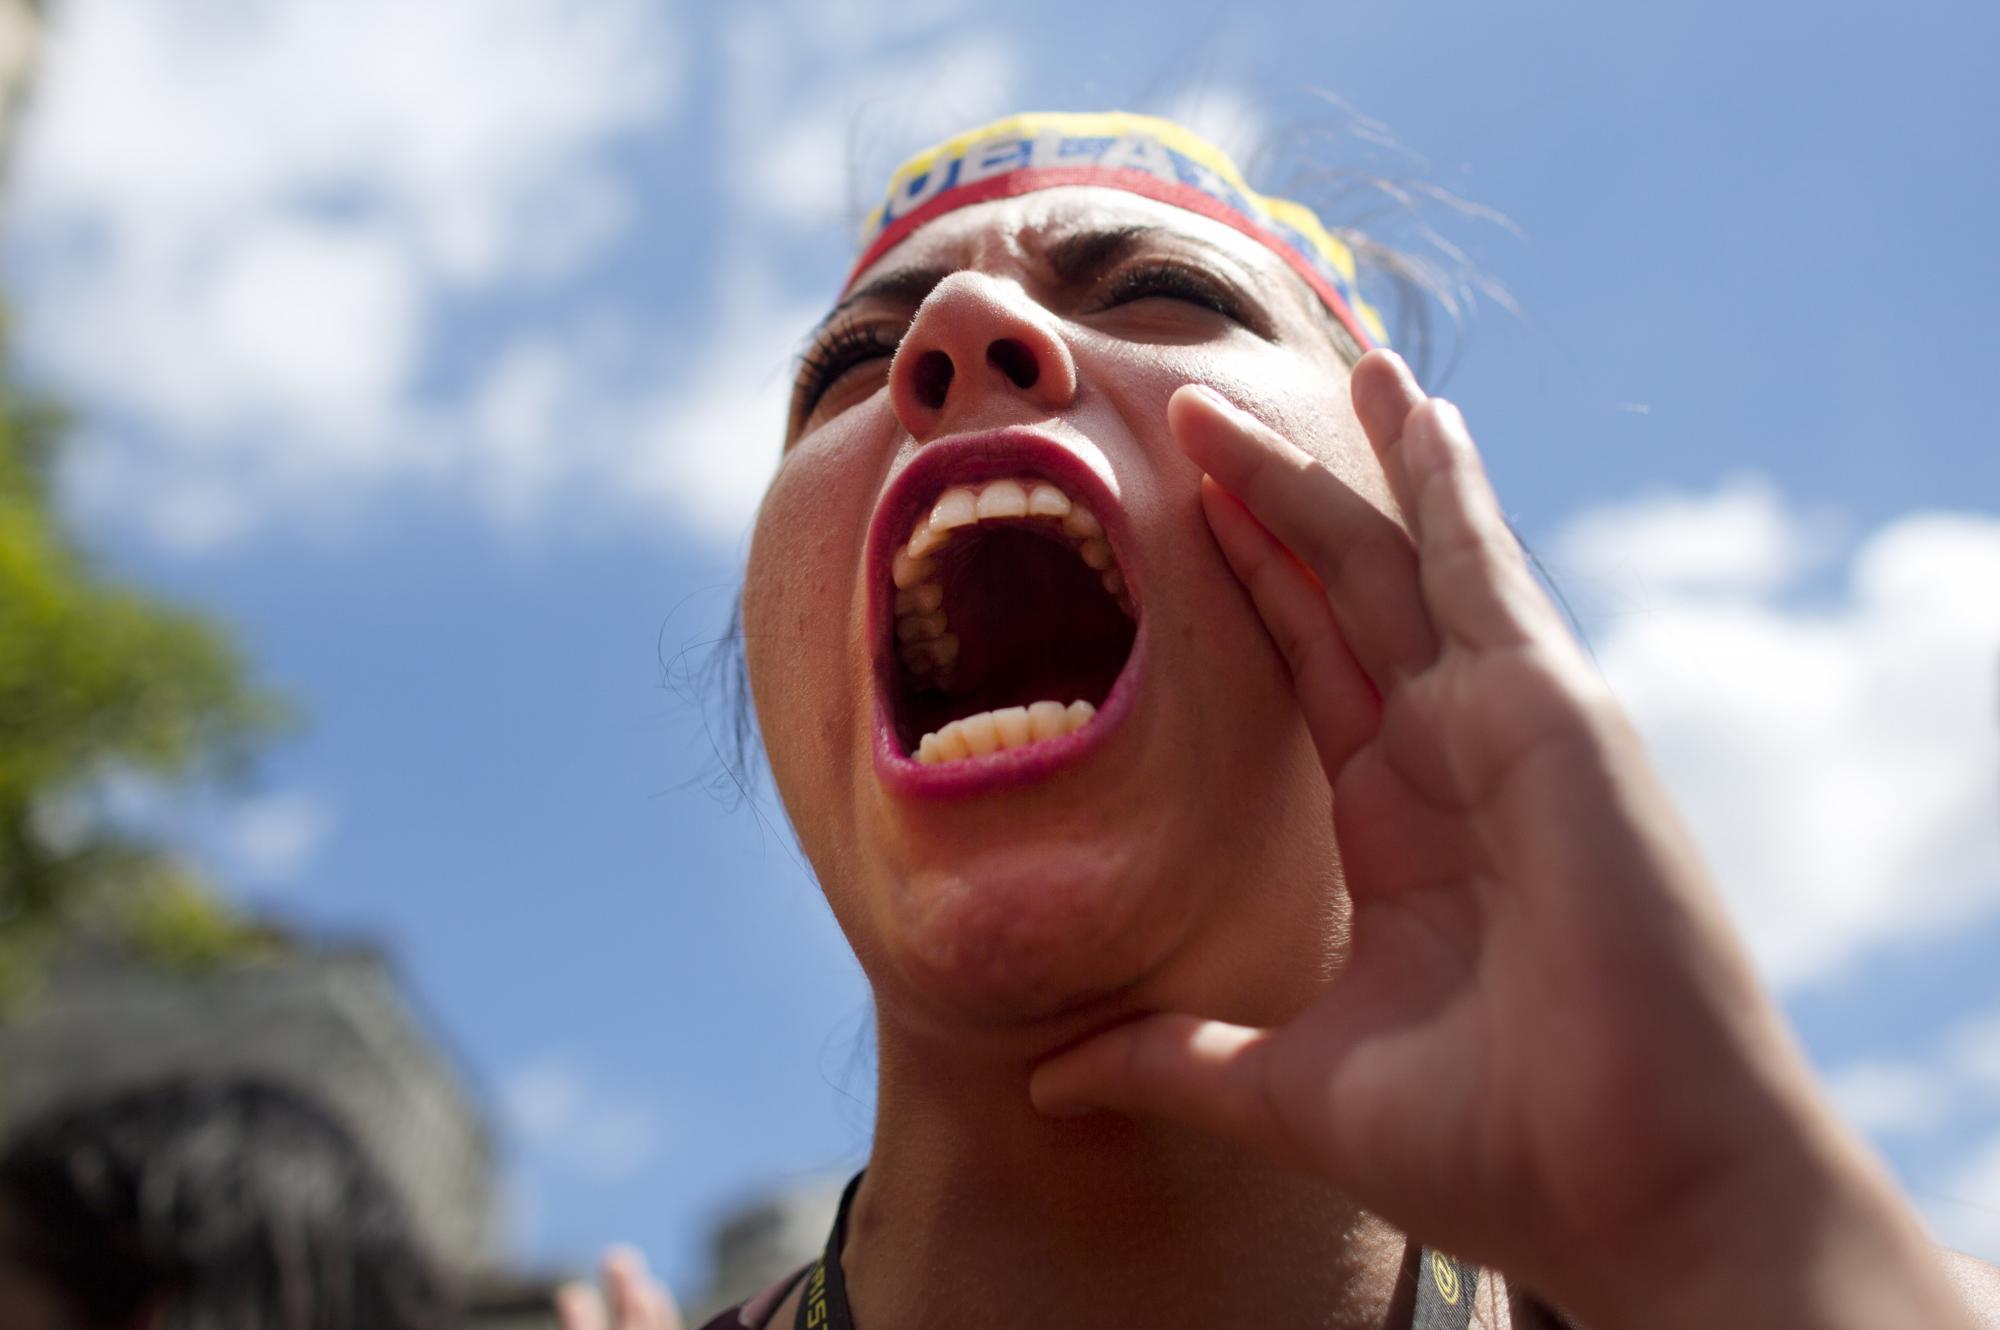 En esta imagen, tomada el 21 de noviembre de 2015, una estudiante universitaria grita lemas durante una manifestación contra el gobierno venezolano, que pide a los ciudadanos que voten por una nueva Venezuela en las próximas elecciones al congreso, en Caracas, Venezuela. En los comicios del próximo 6 de diciembre participarán más de dos docenas de partidos, en el que será el desafío más importante en 16 años de gobierno socialista en Venezuela.